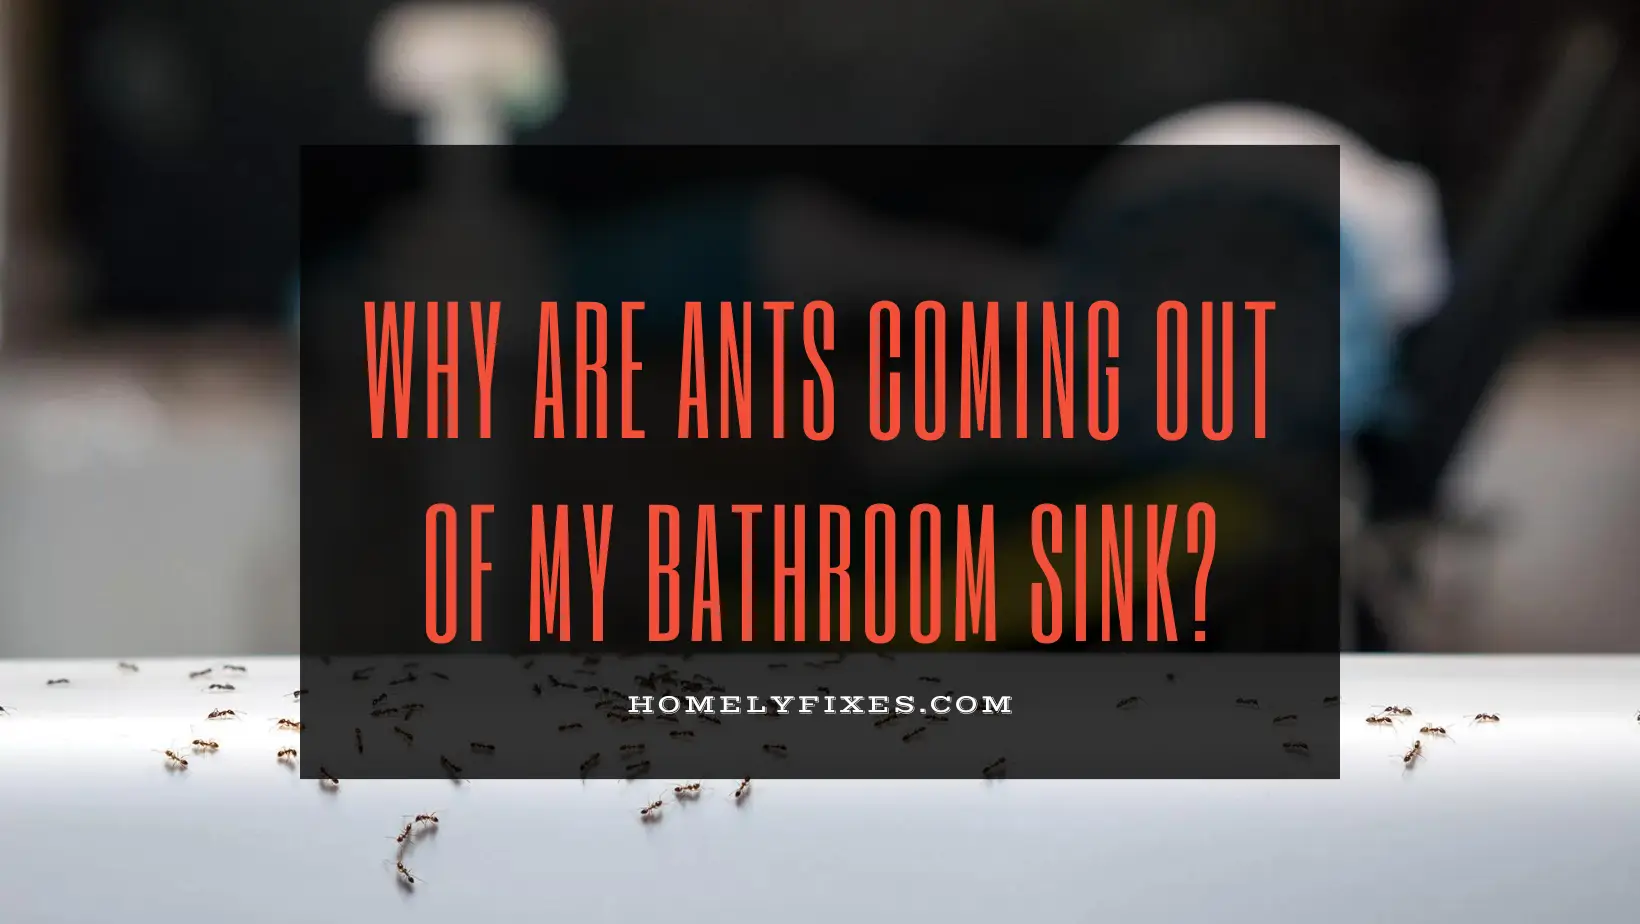 i had 8 ants in my bathroom sink